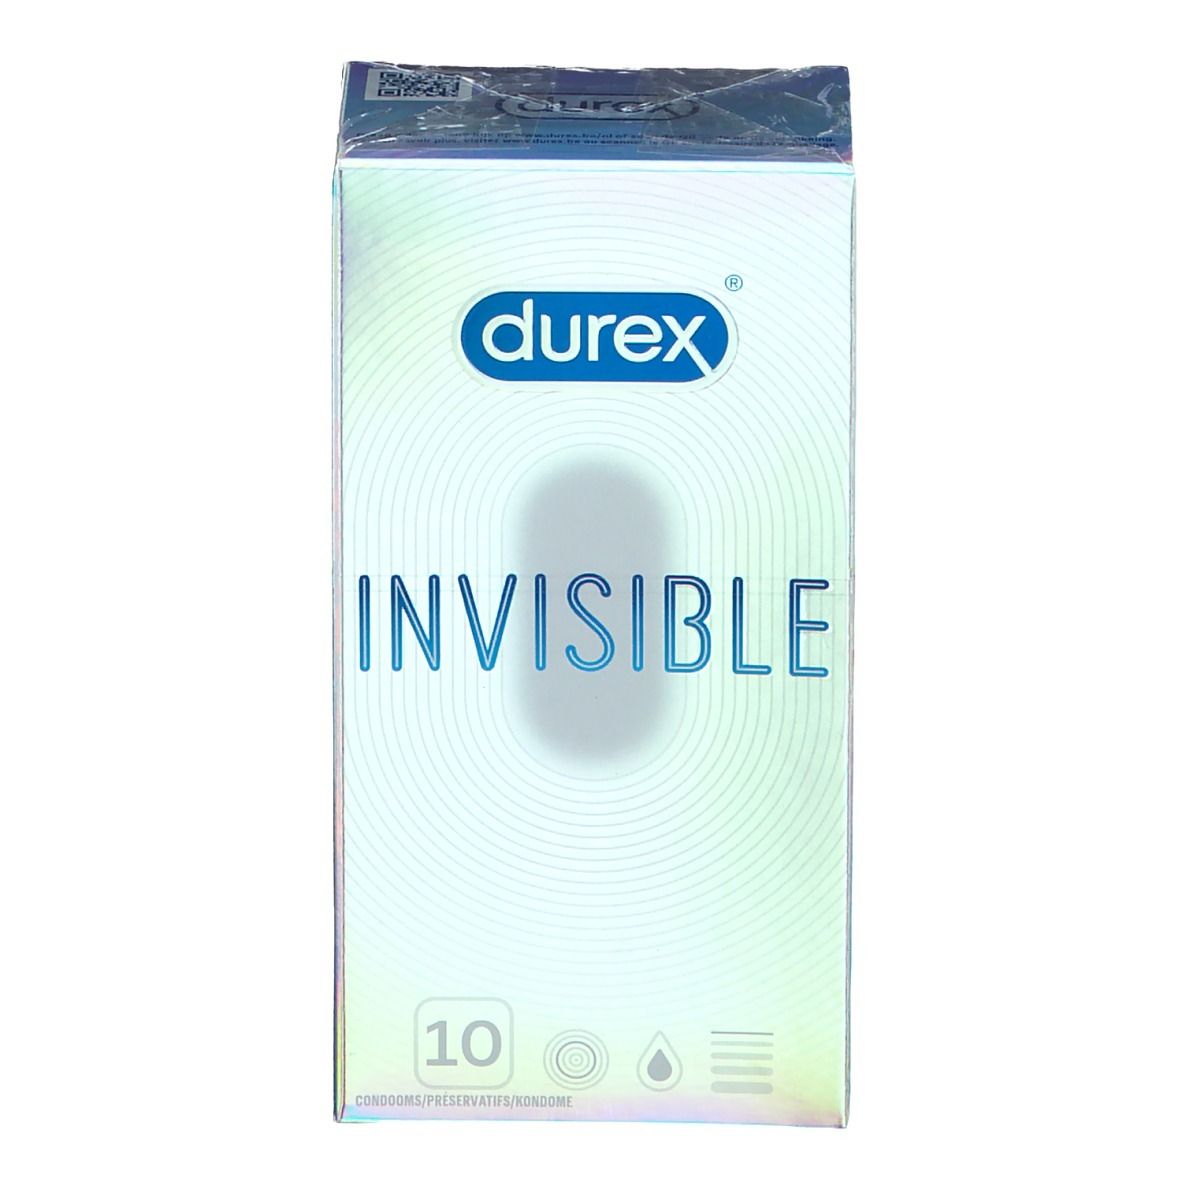 Durex® Invisible Préservatifs ultra fins